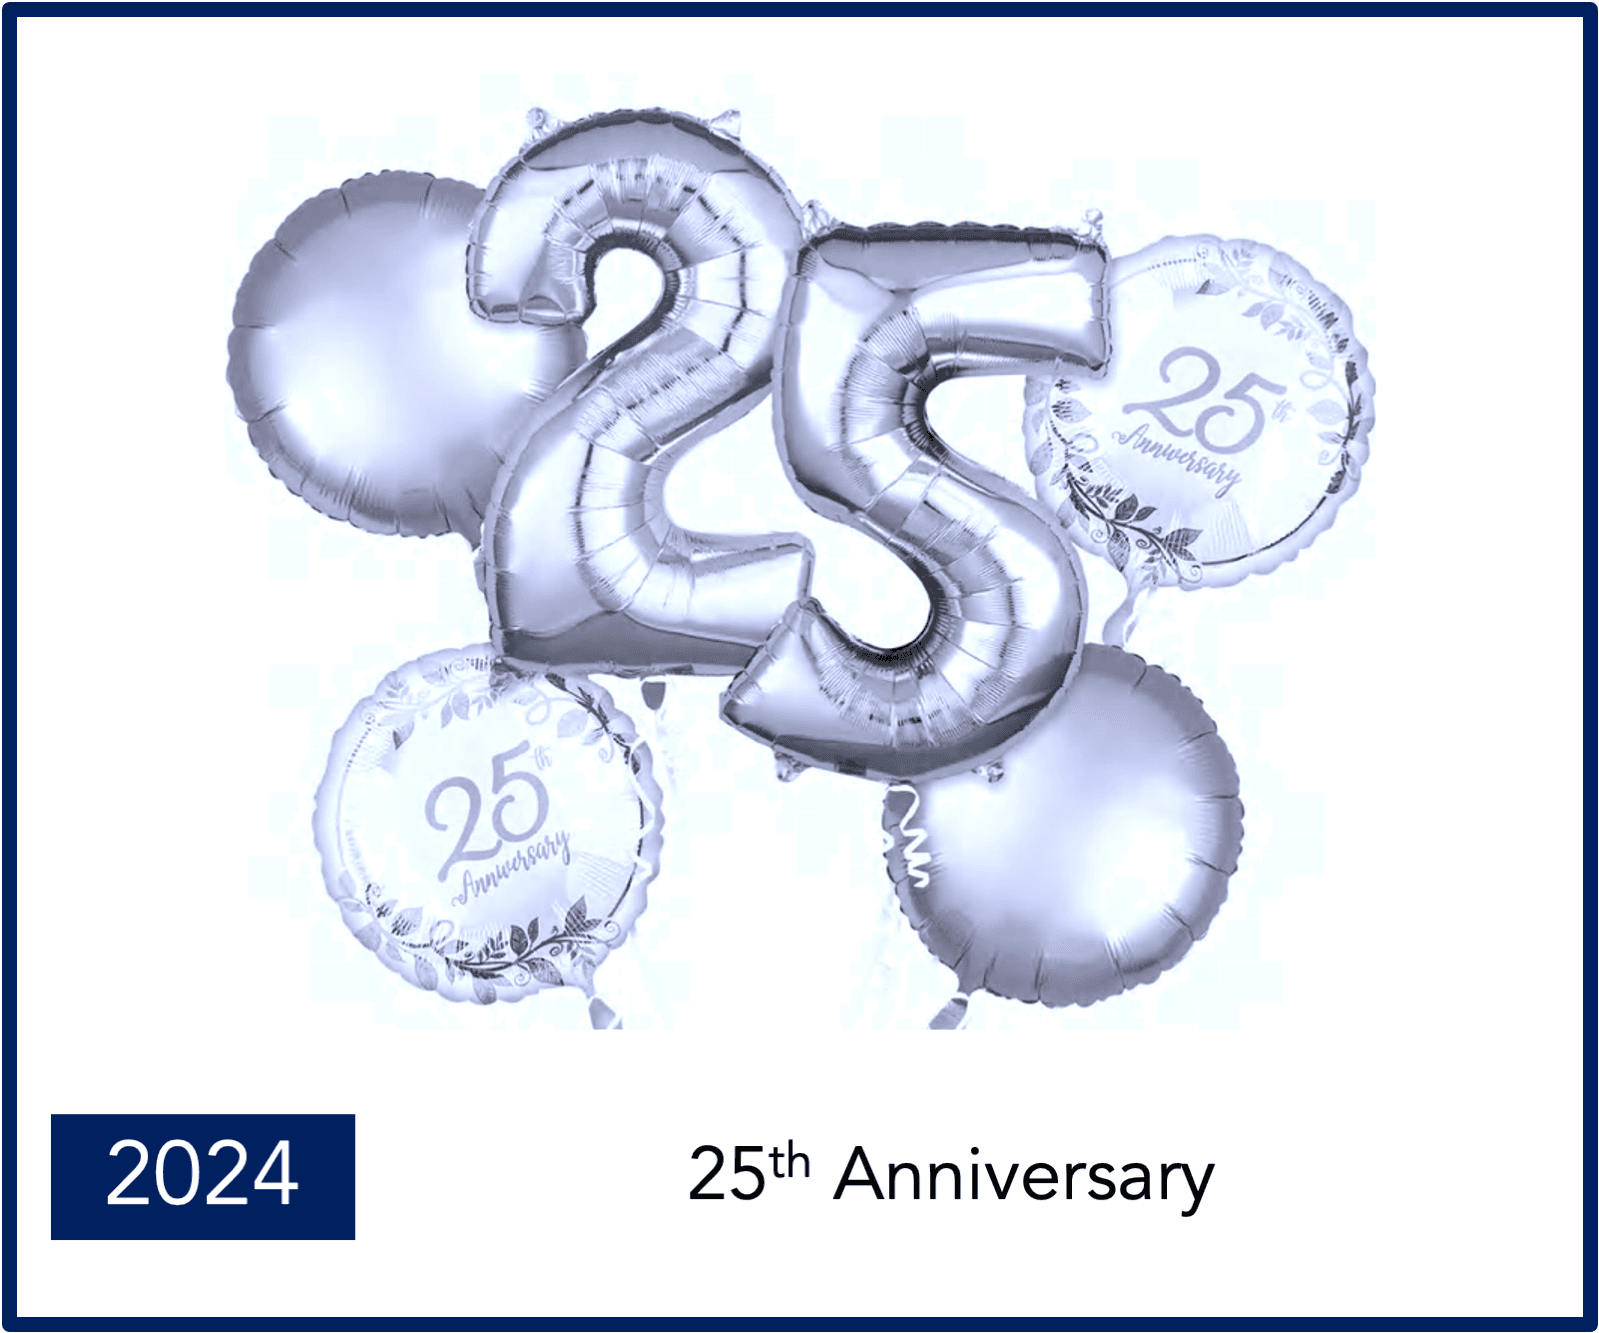 2024 - Anniversary 